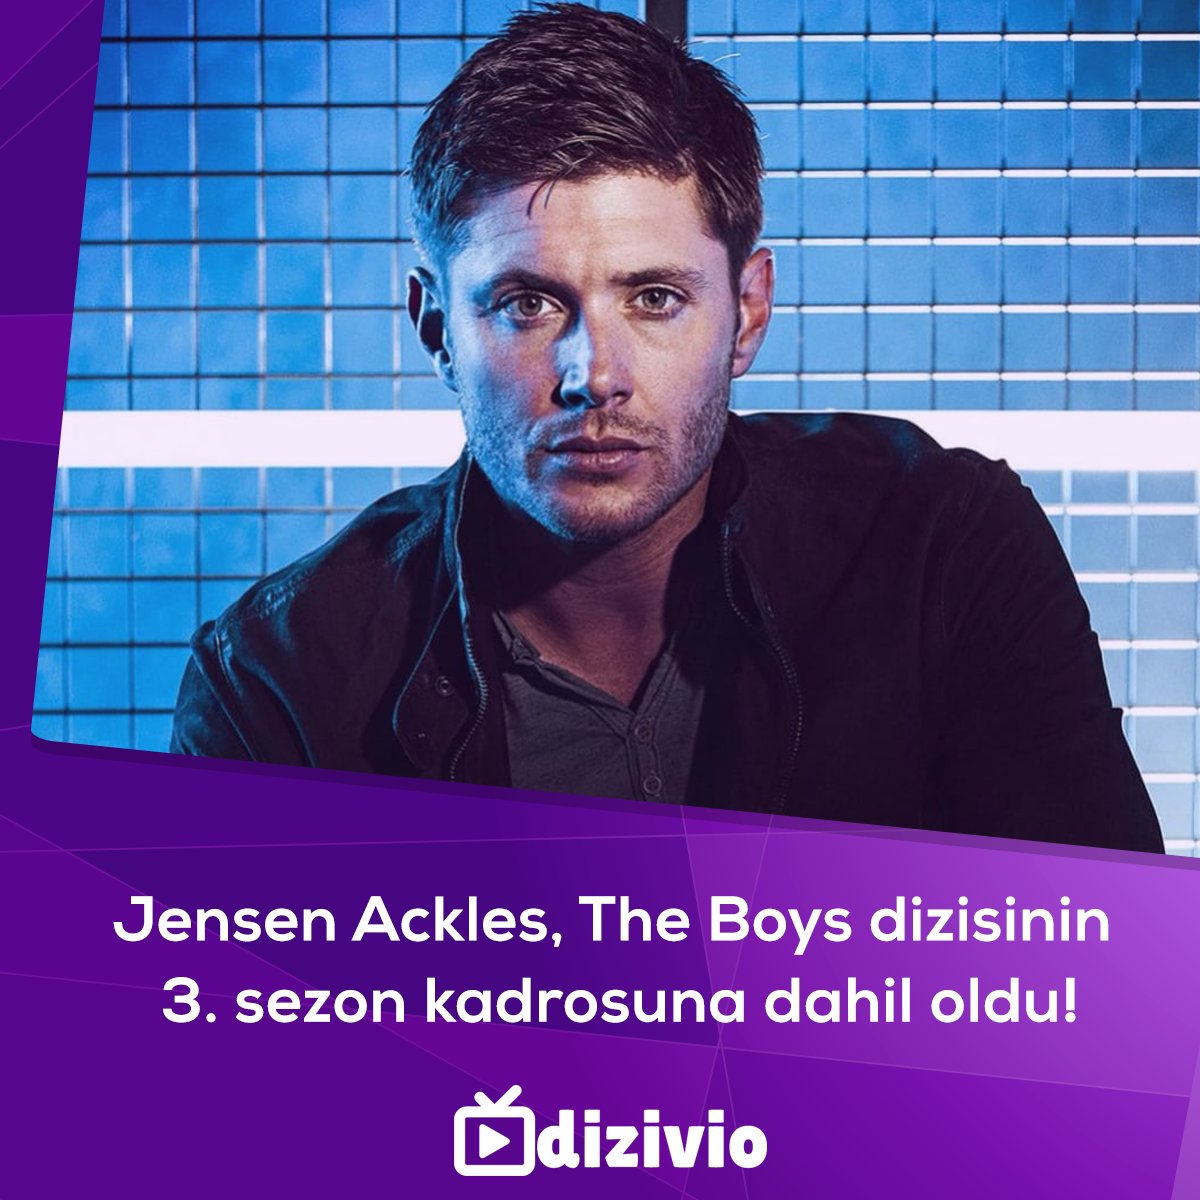 Jensen Ackles, The Boys dizisinin 3. sezon kadrosuna dahil oldu! #TheBoys #jensenAckles #ChaceCrawford #KarlUrban #JackQuaid #AntonyStarr #ErinMoriarty #LazAlonso #TomerCapon #Supernatural #GossipGirl #Geek #YabancıDizi #DiziHaberleri #YabancıDiziler #DiziÖnerileri